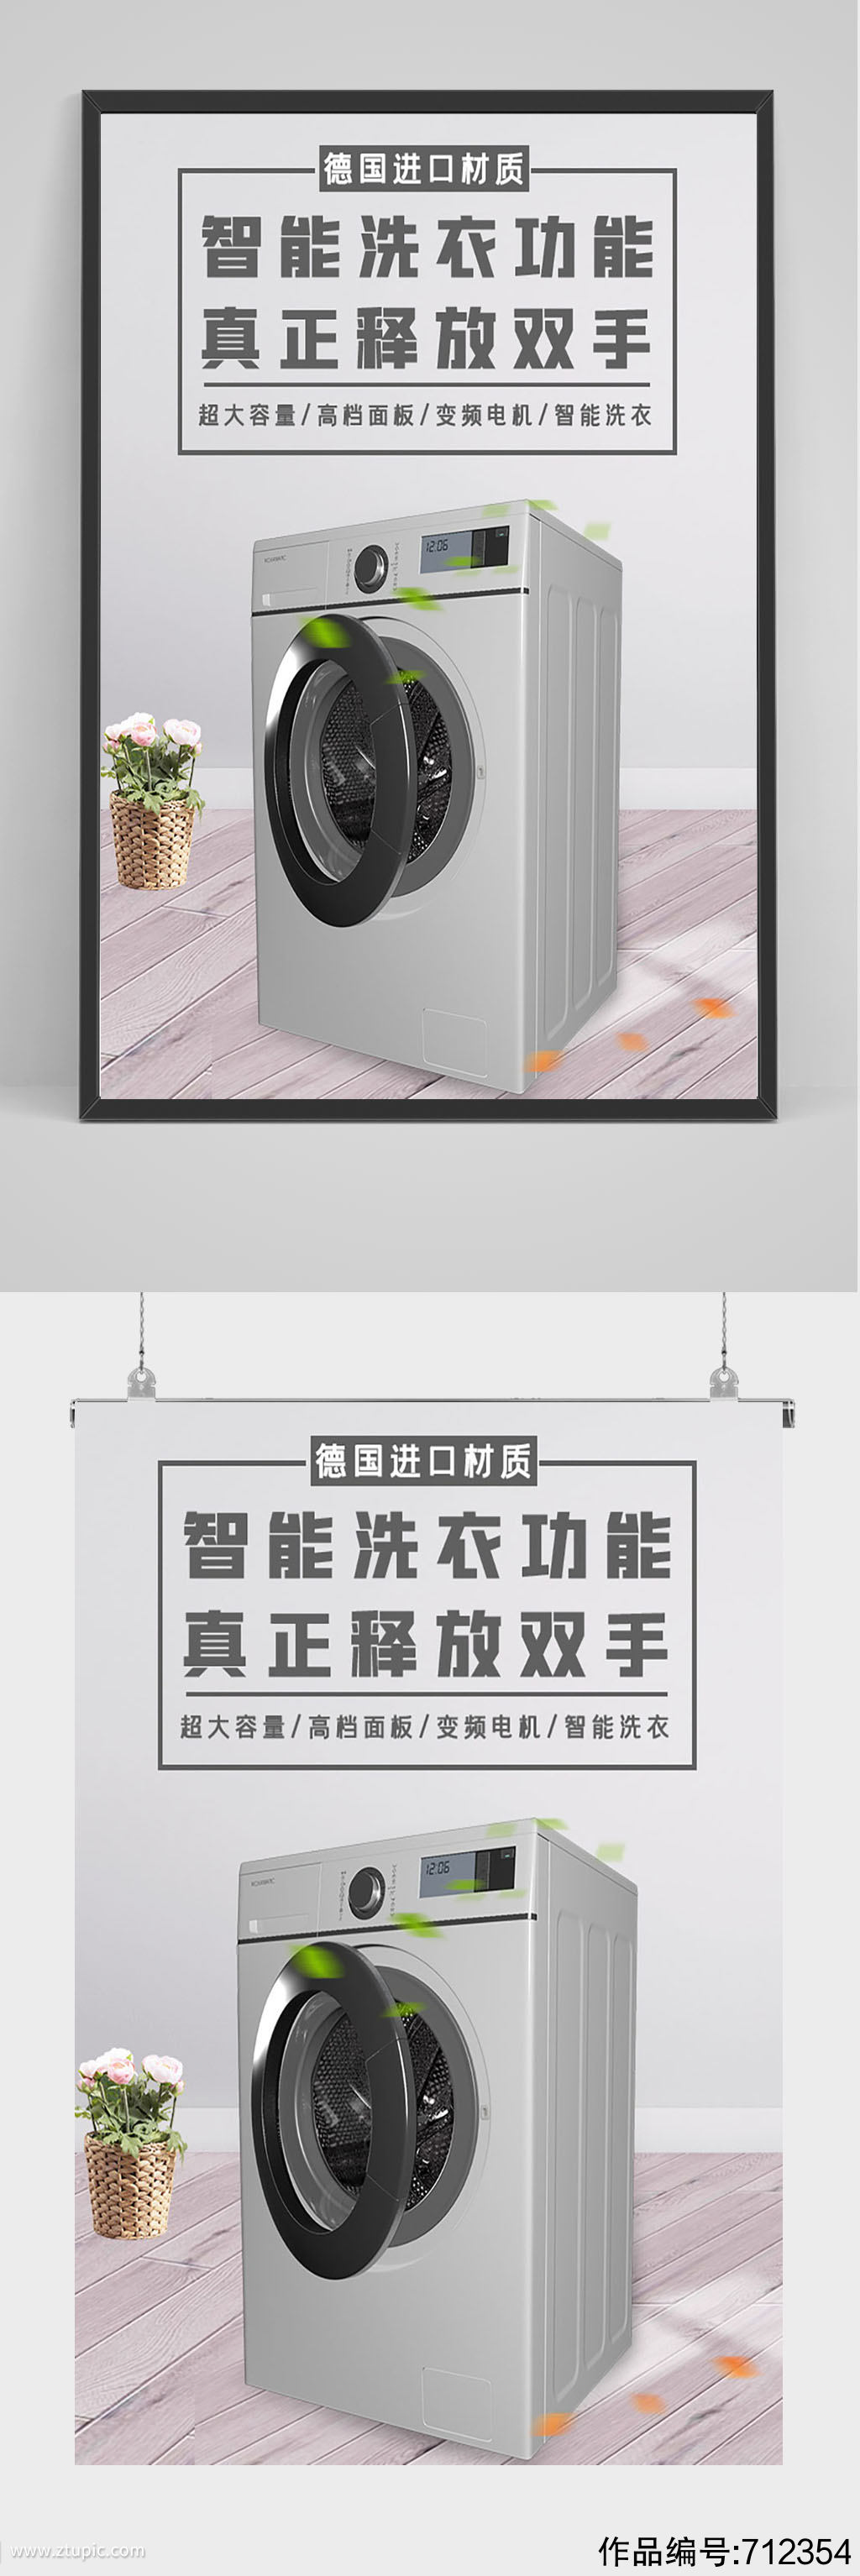 精品洗衣机促销海报设计